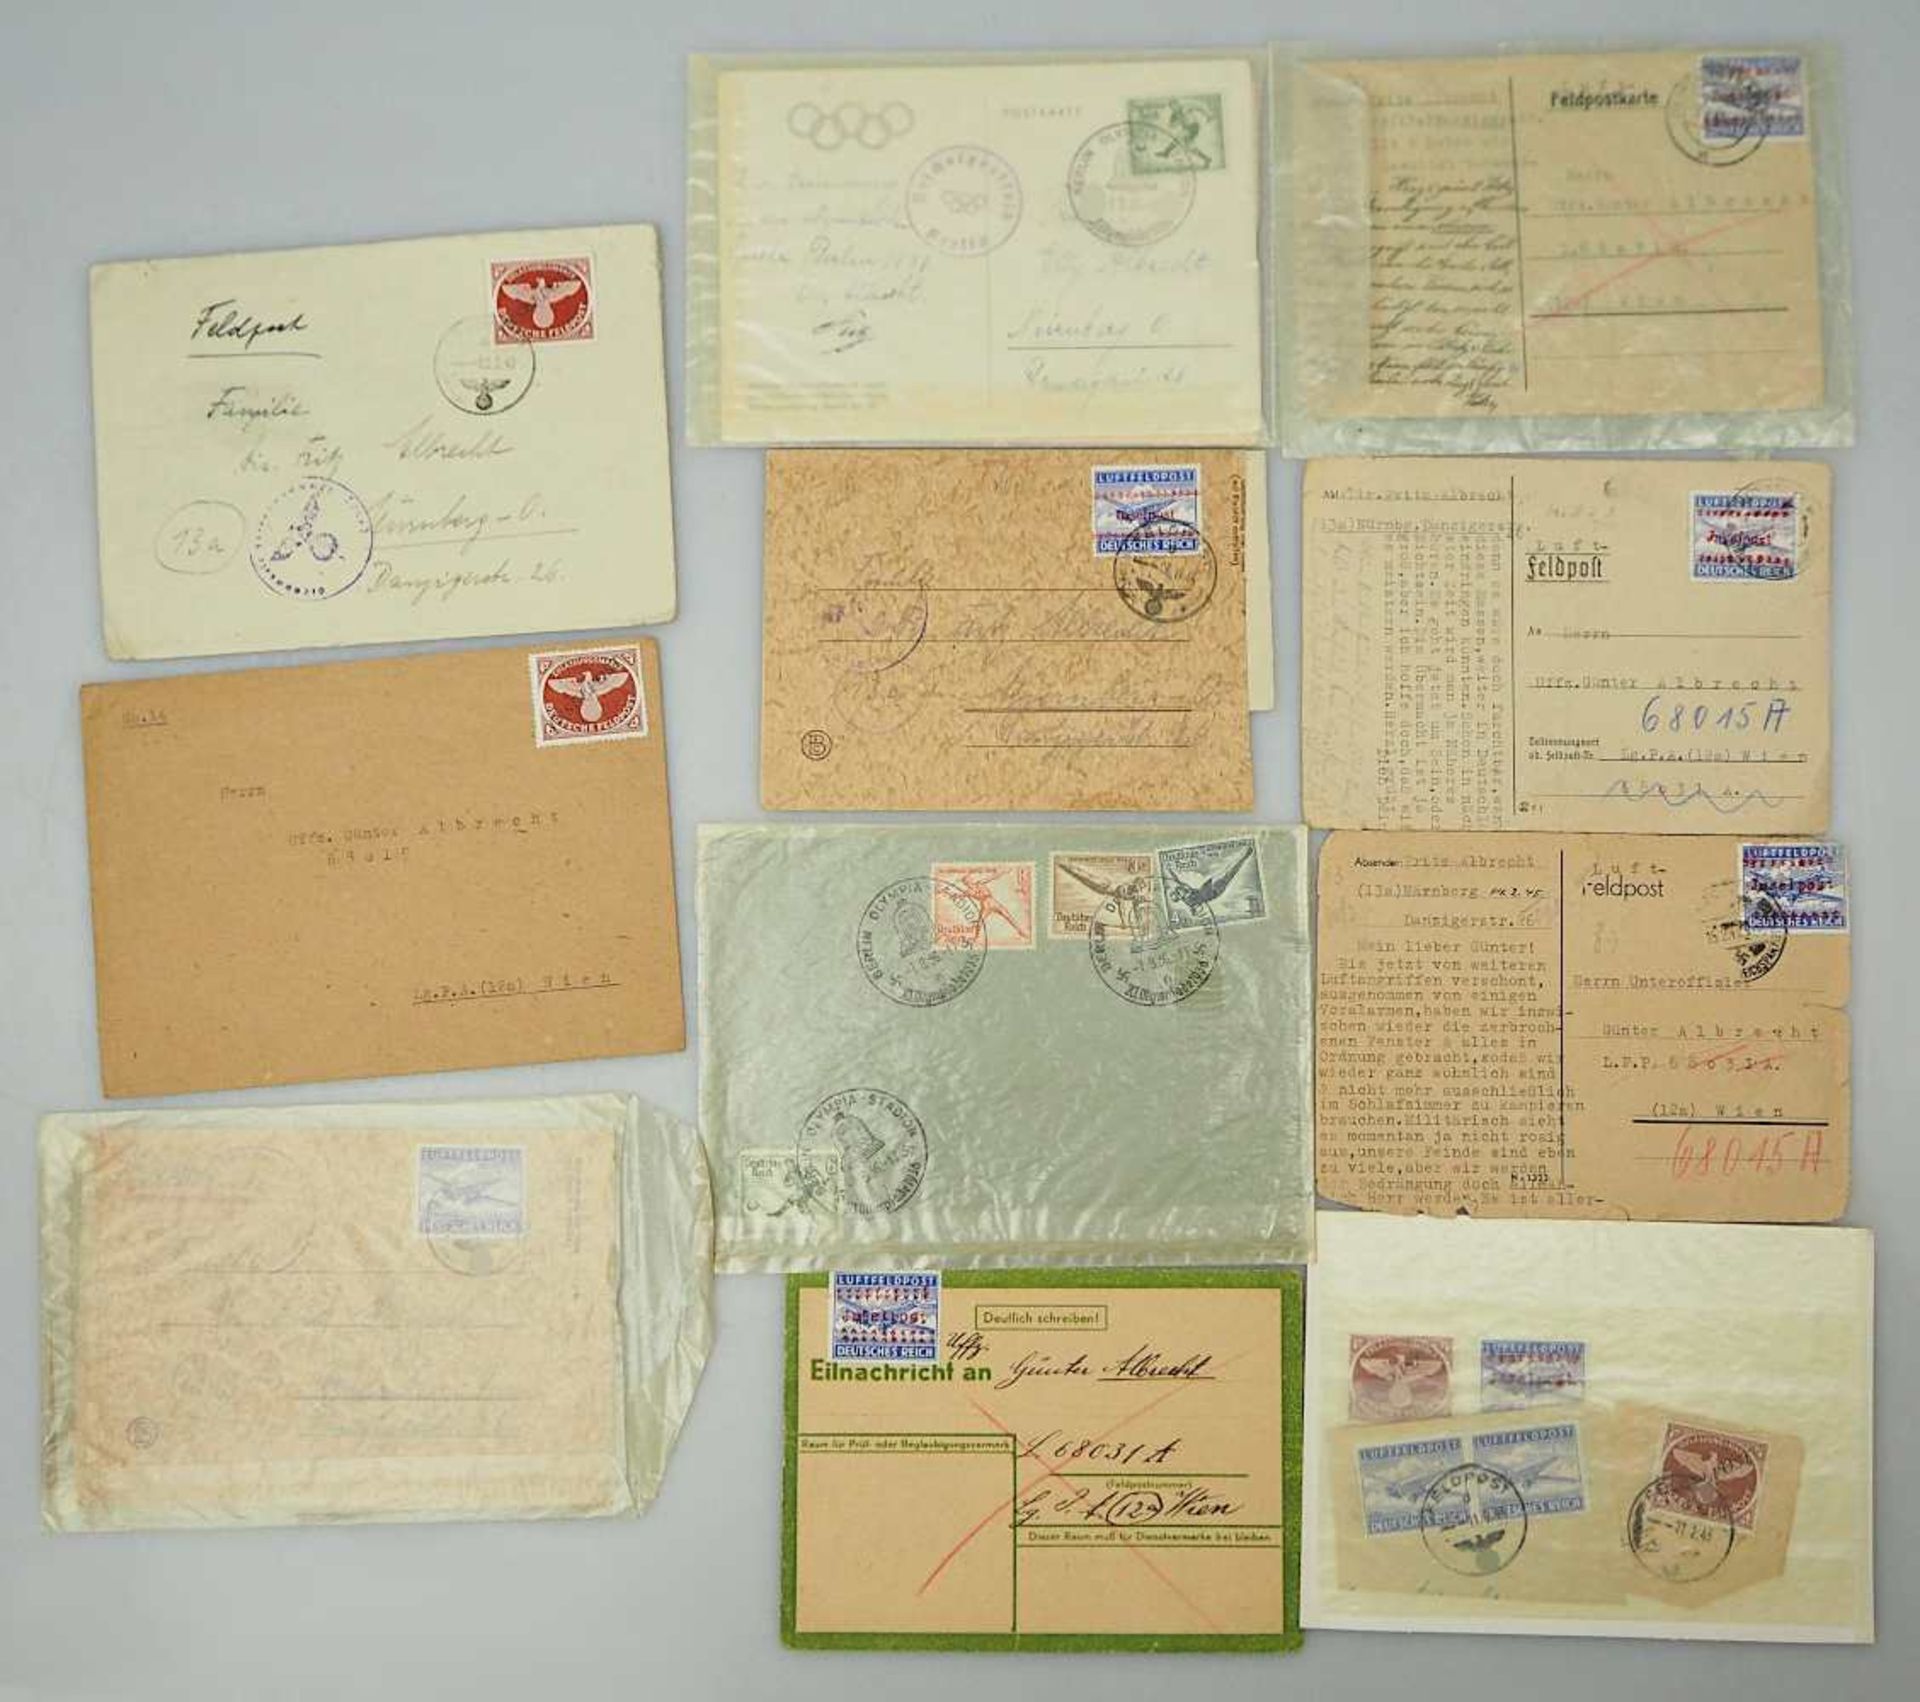 1 kleines Konv. Feldpostbriefe u.a. 1936-1945 vom Unteroffizier Albrecht je gelaufen m